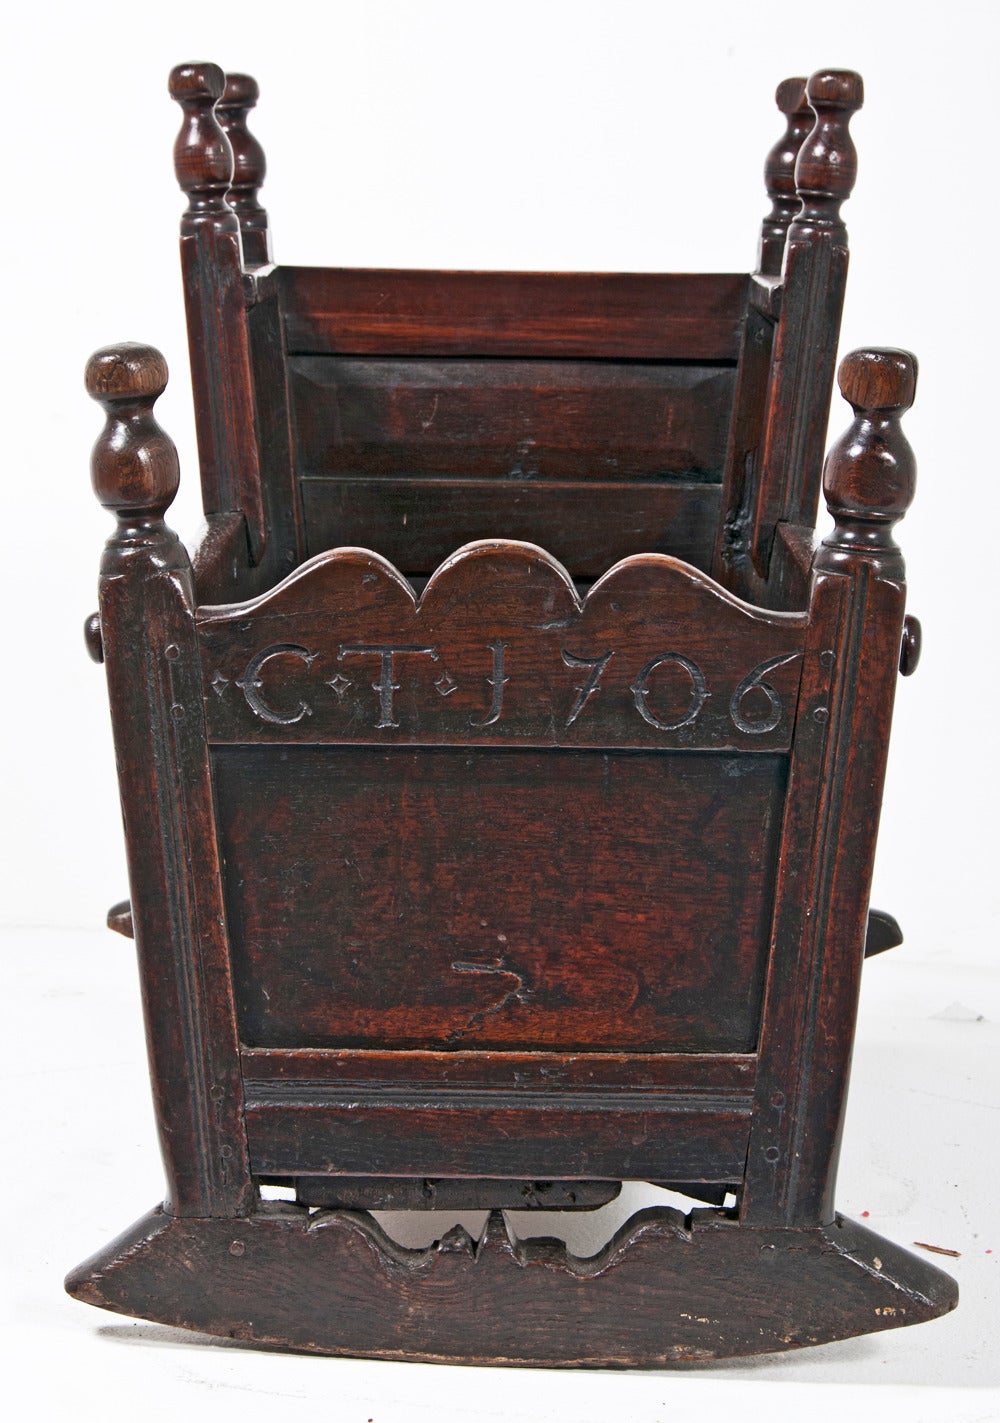 18th century cradle